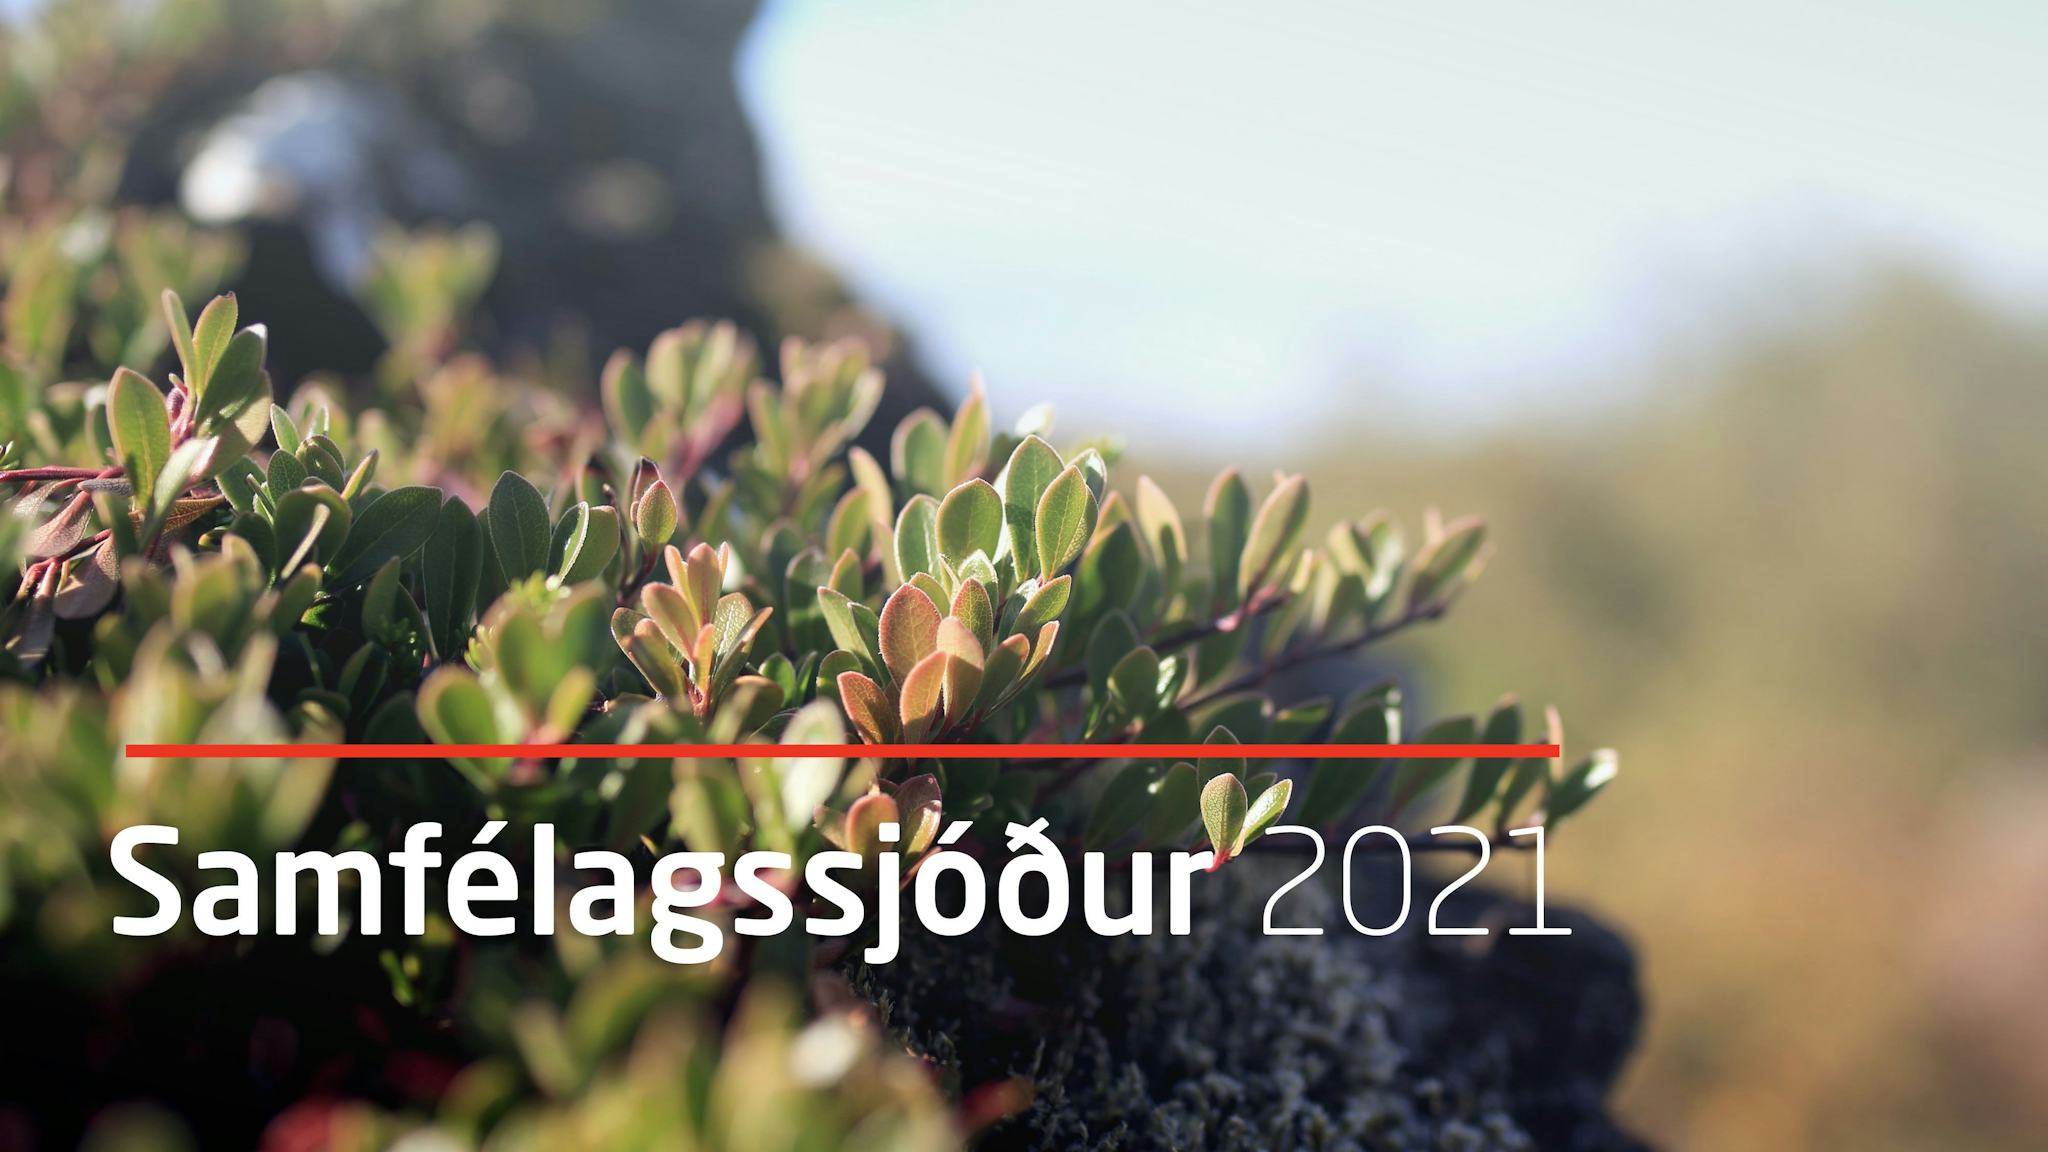 A close up of green shrubbery with a text overlay that reads "Samfélagssjóður 2021"